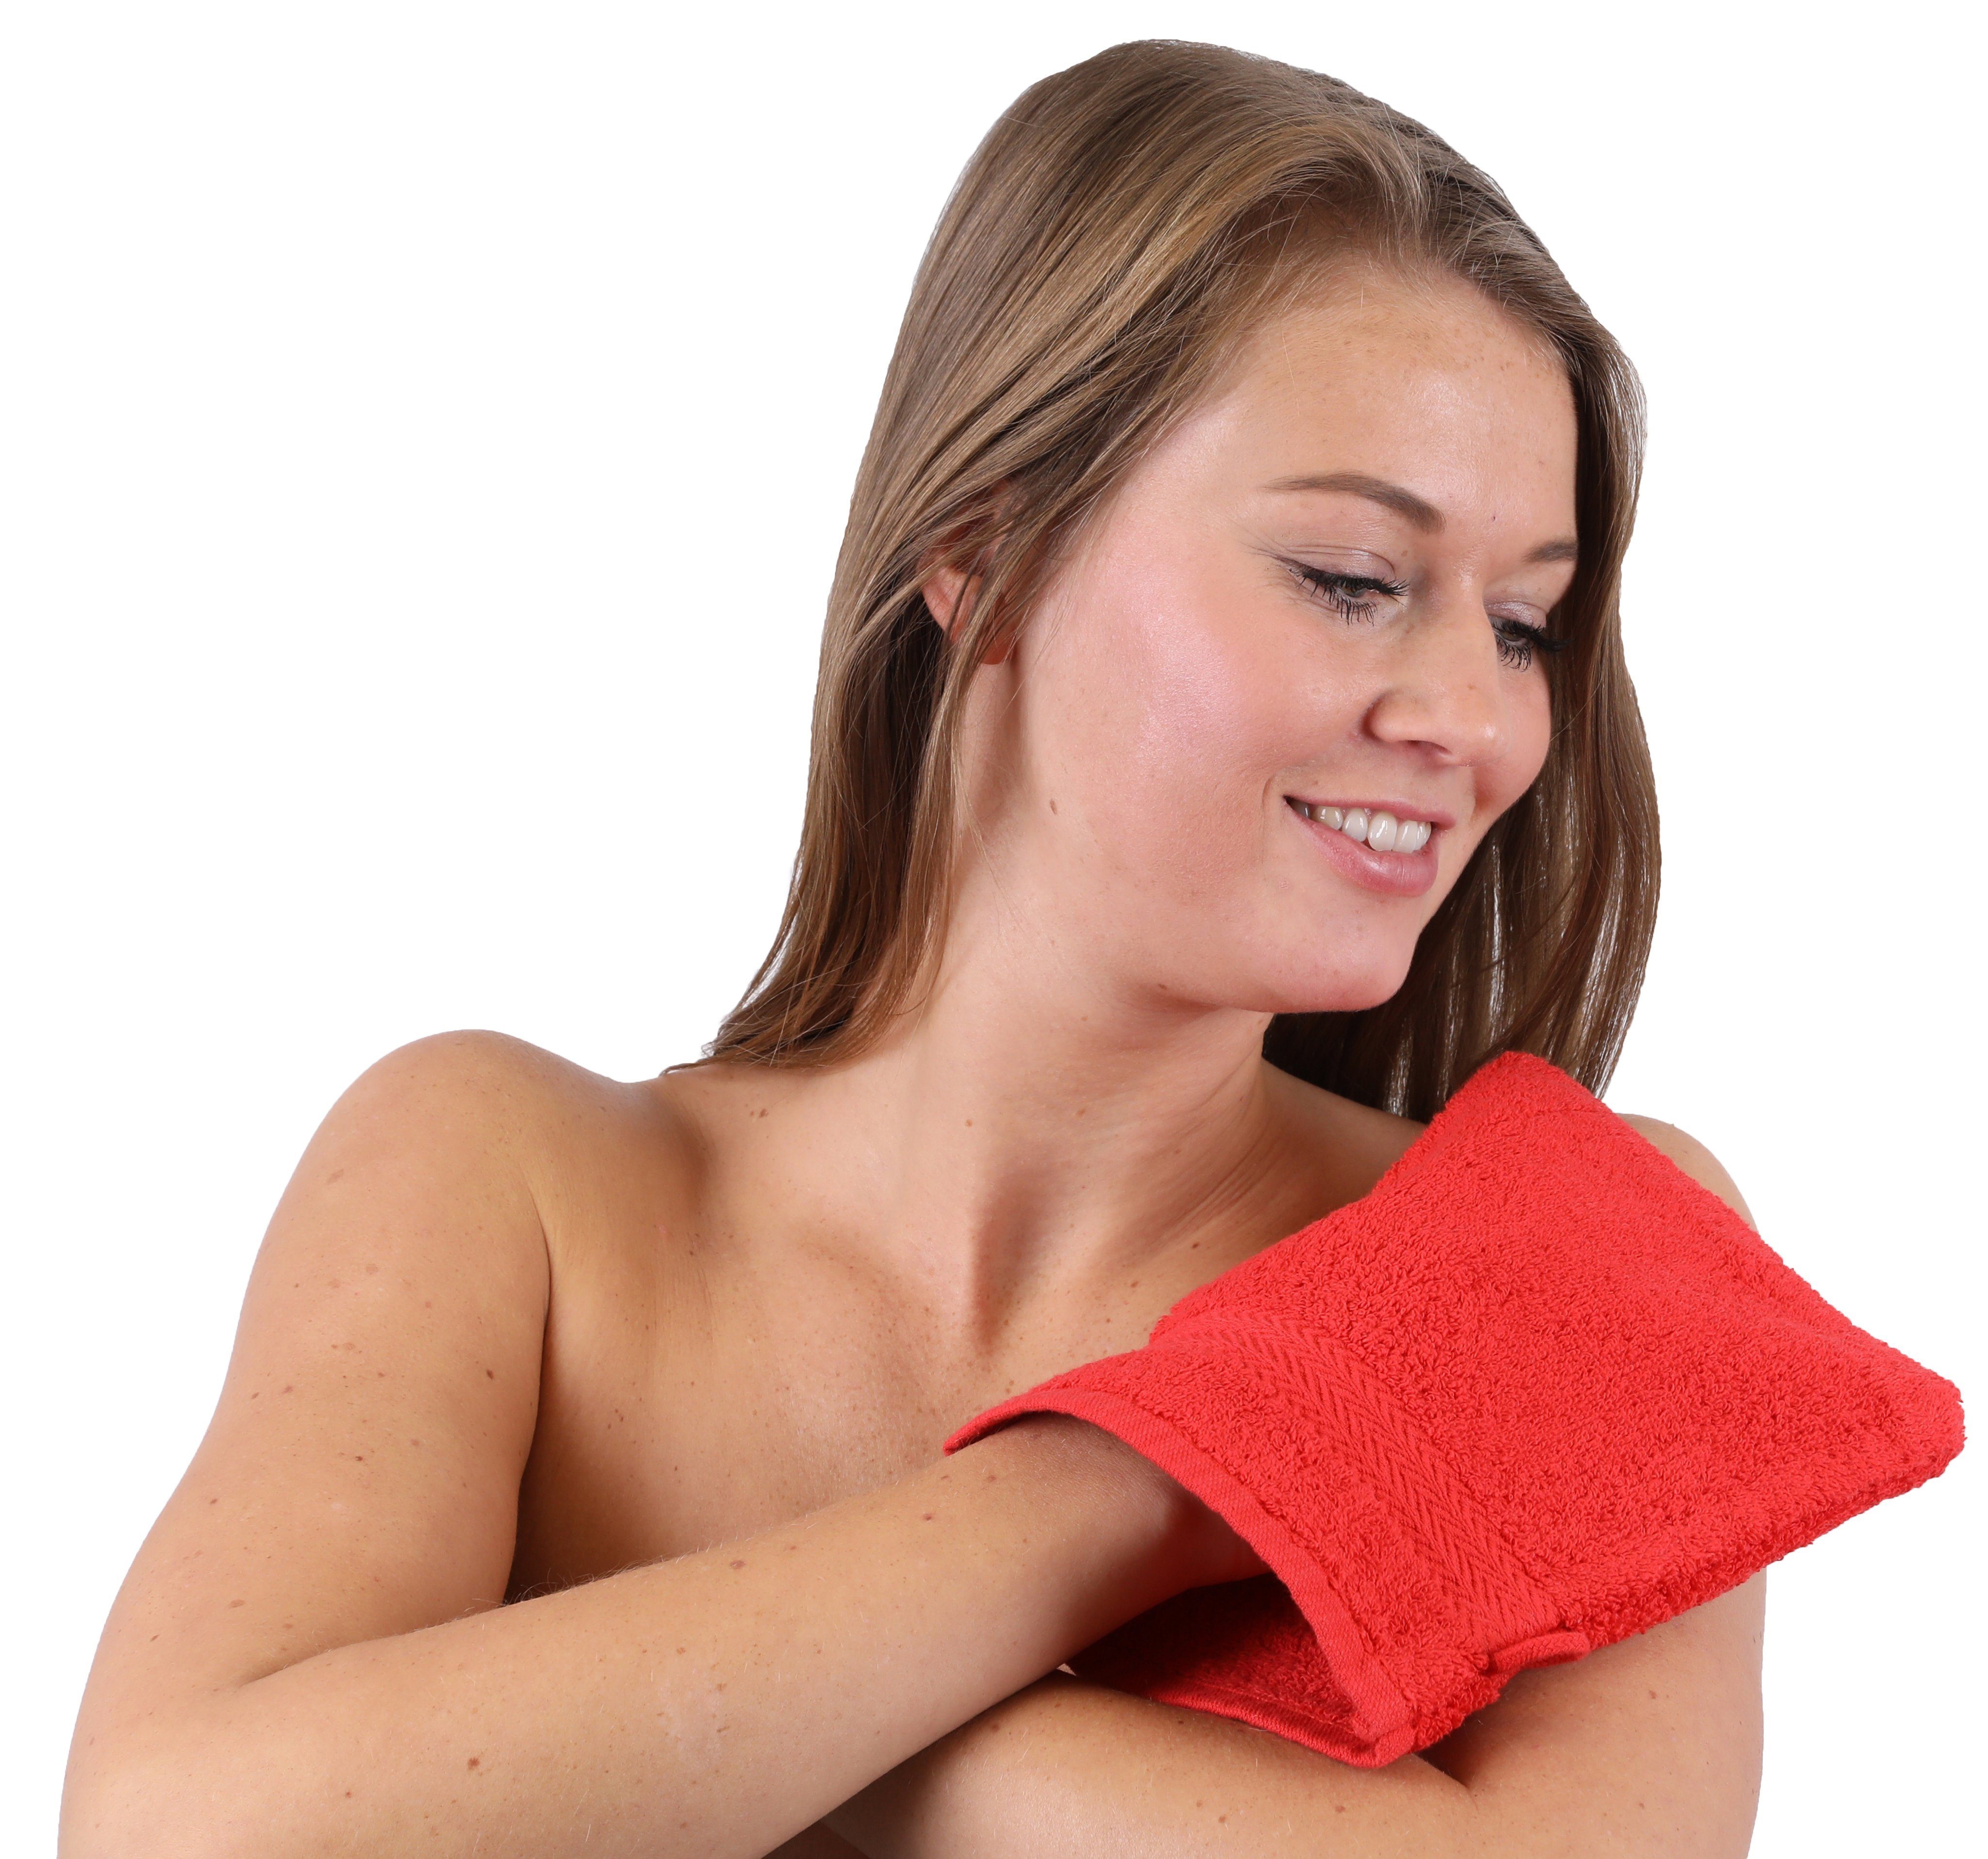 Waschlappen Betz Waschhandschuh 100% Baumwolle rot Stück dunkelblau 10 Set Premium 16x21 Farbe cm Waschhandschuhe und (10-tlg)